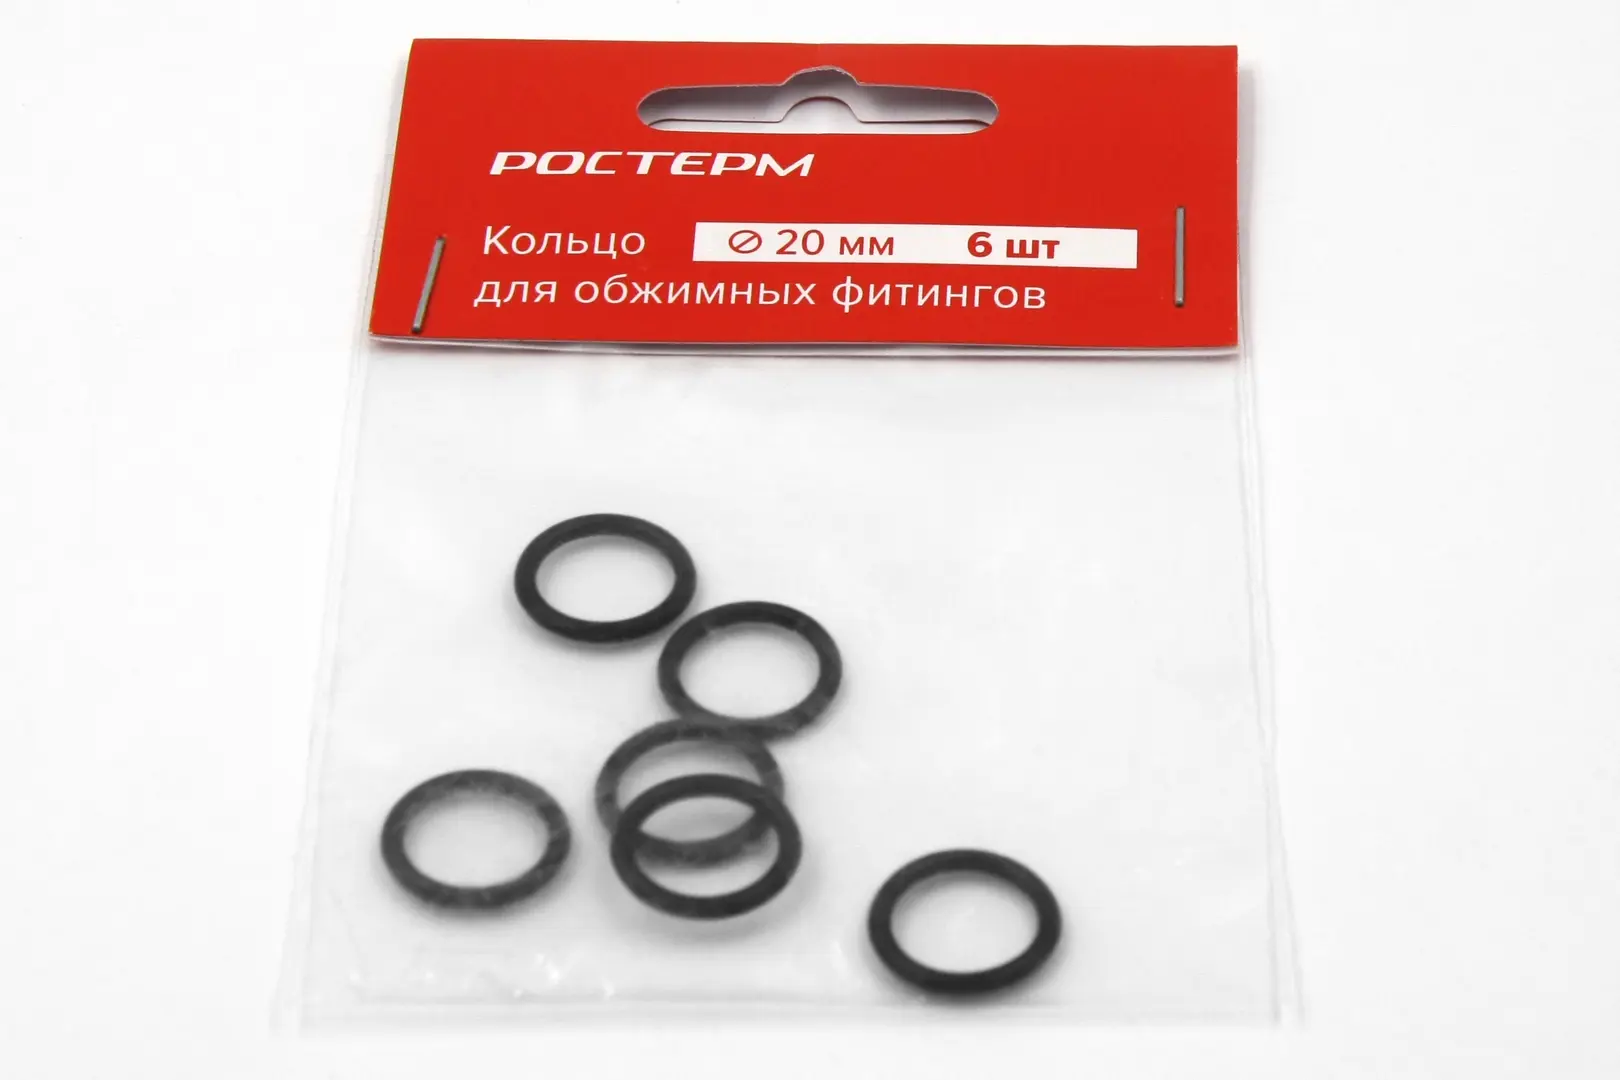 Кольцо для обжима фитингов Ростерм 20 мм 6 штук цвет чёрный уплотнительное кольцо для фитингов valtec